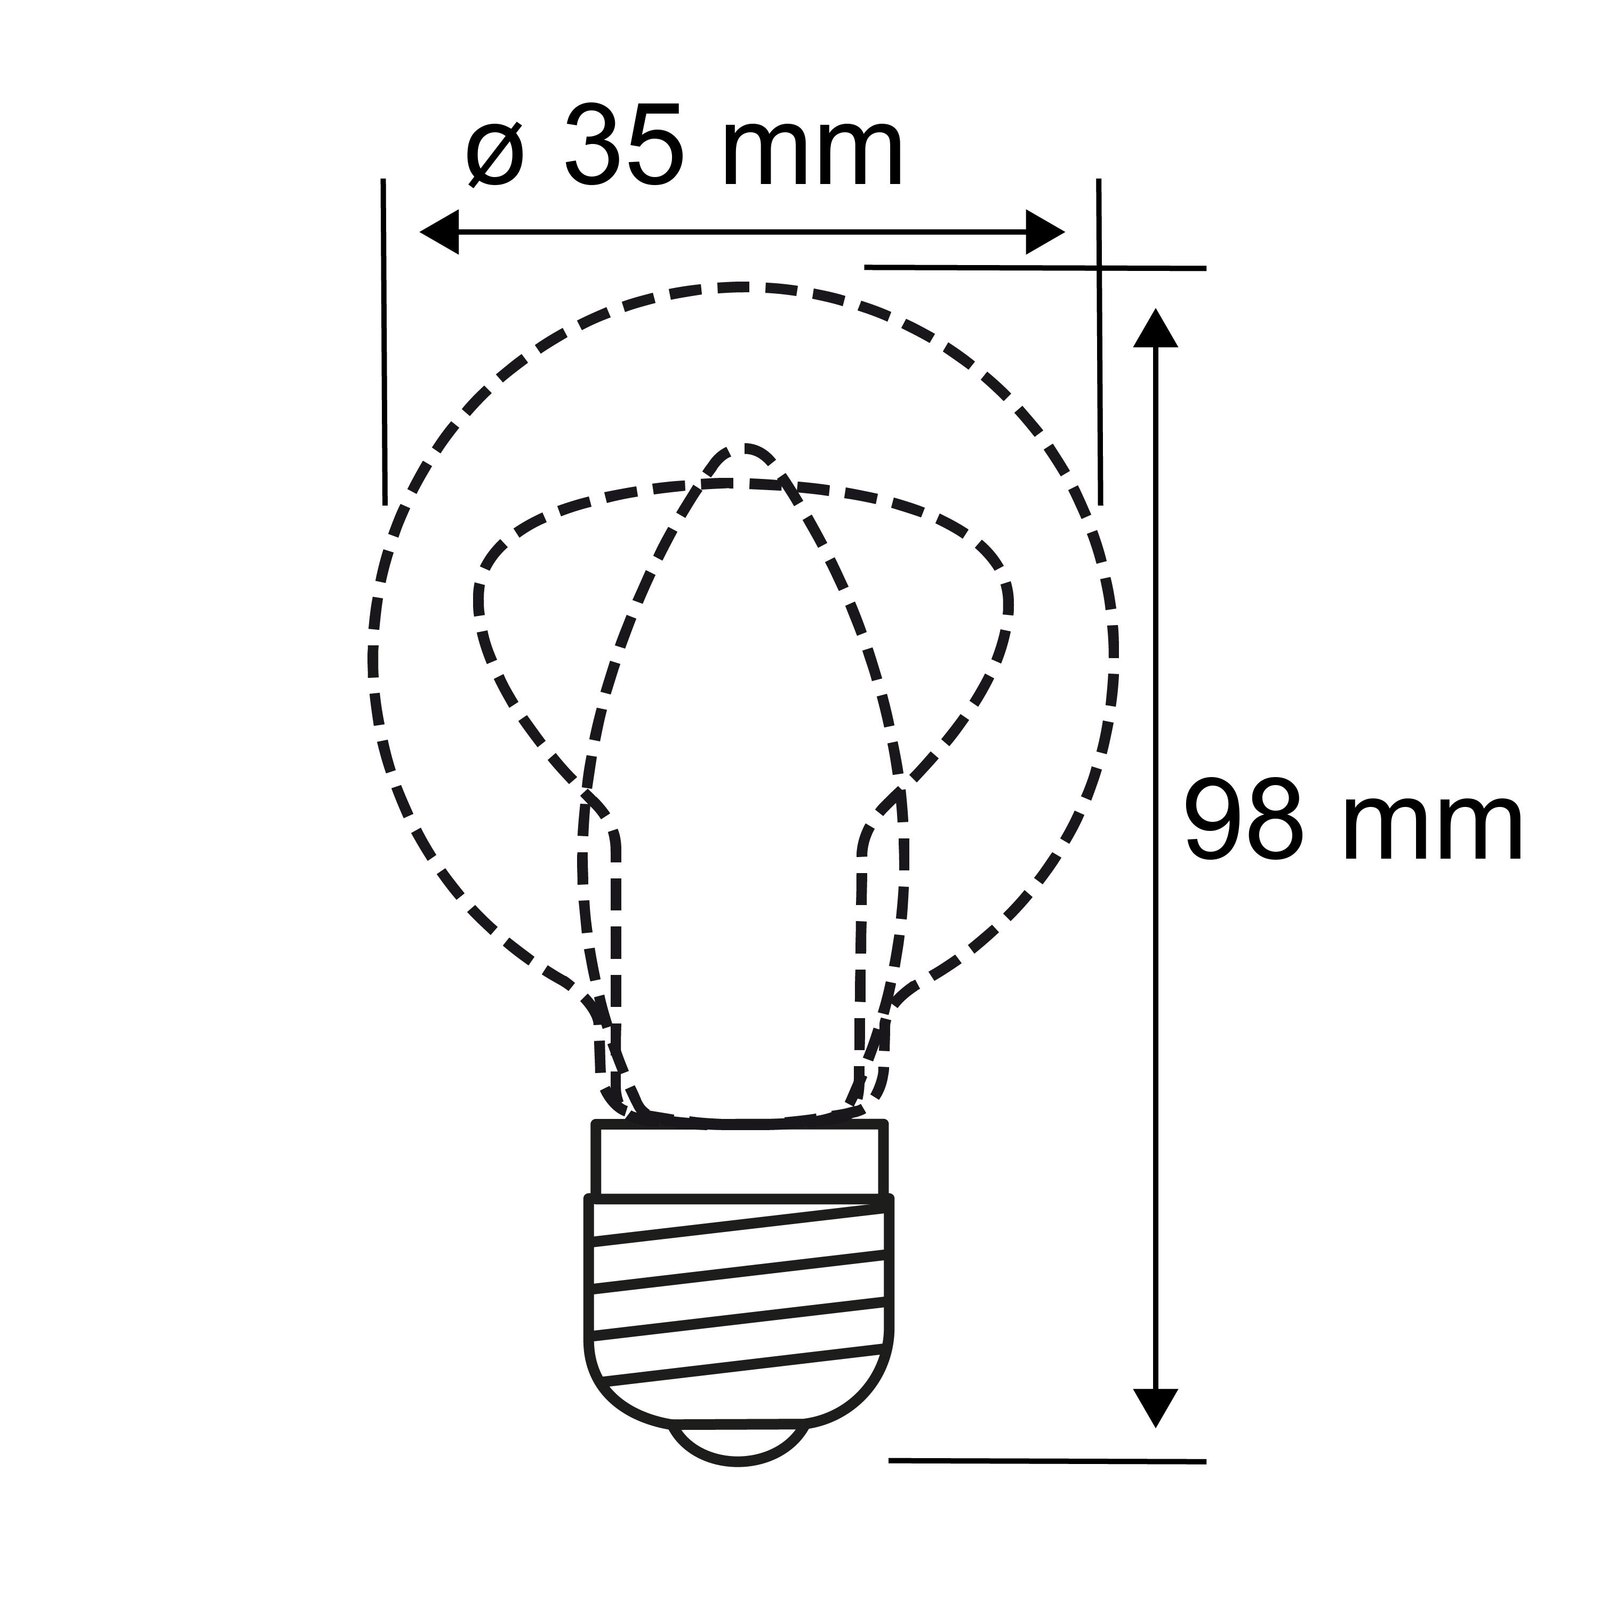 LED žiarovka E14 B35 5W 840 matná stmievateľná